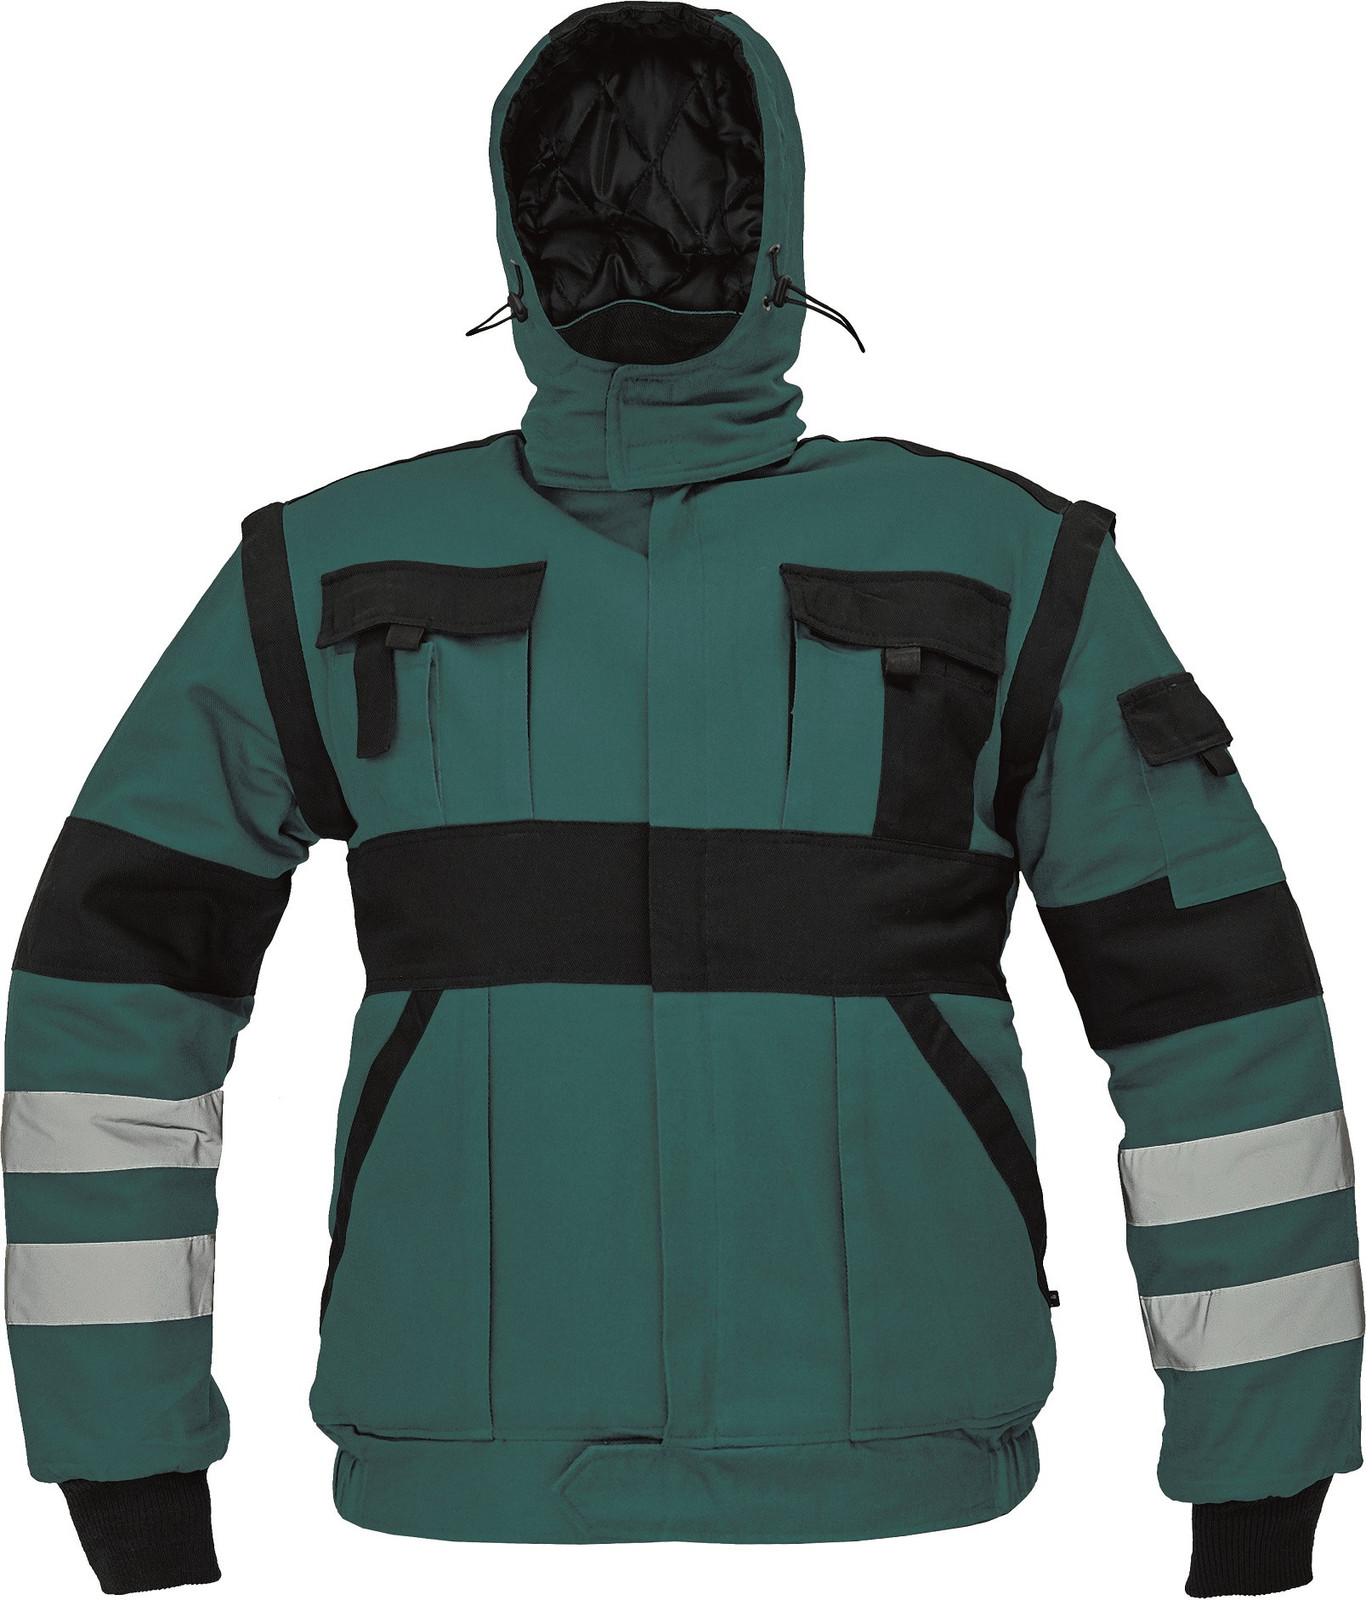 Zateplená montérková bunda Max Winter s reflexnými pruhmi 2v1 - veľkosť: 52, farba: zelená/čierna